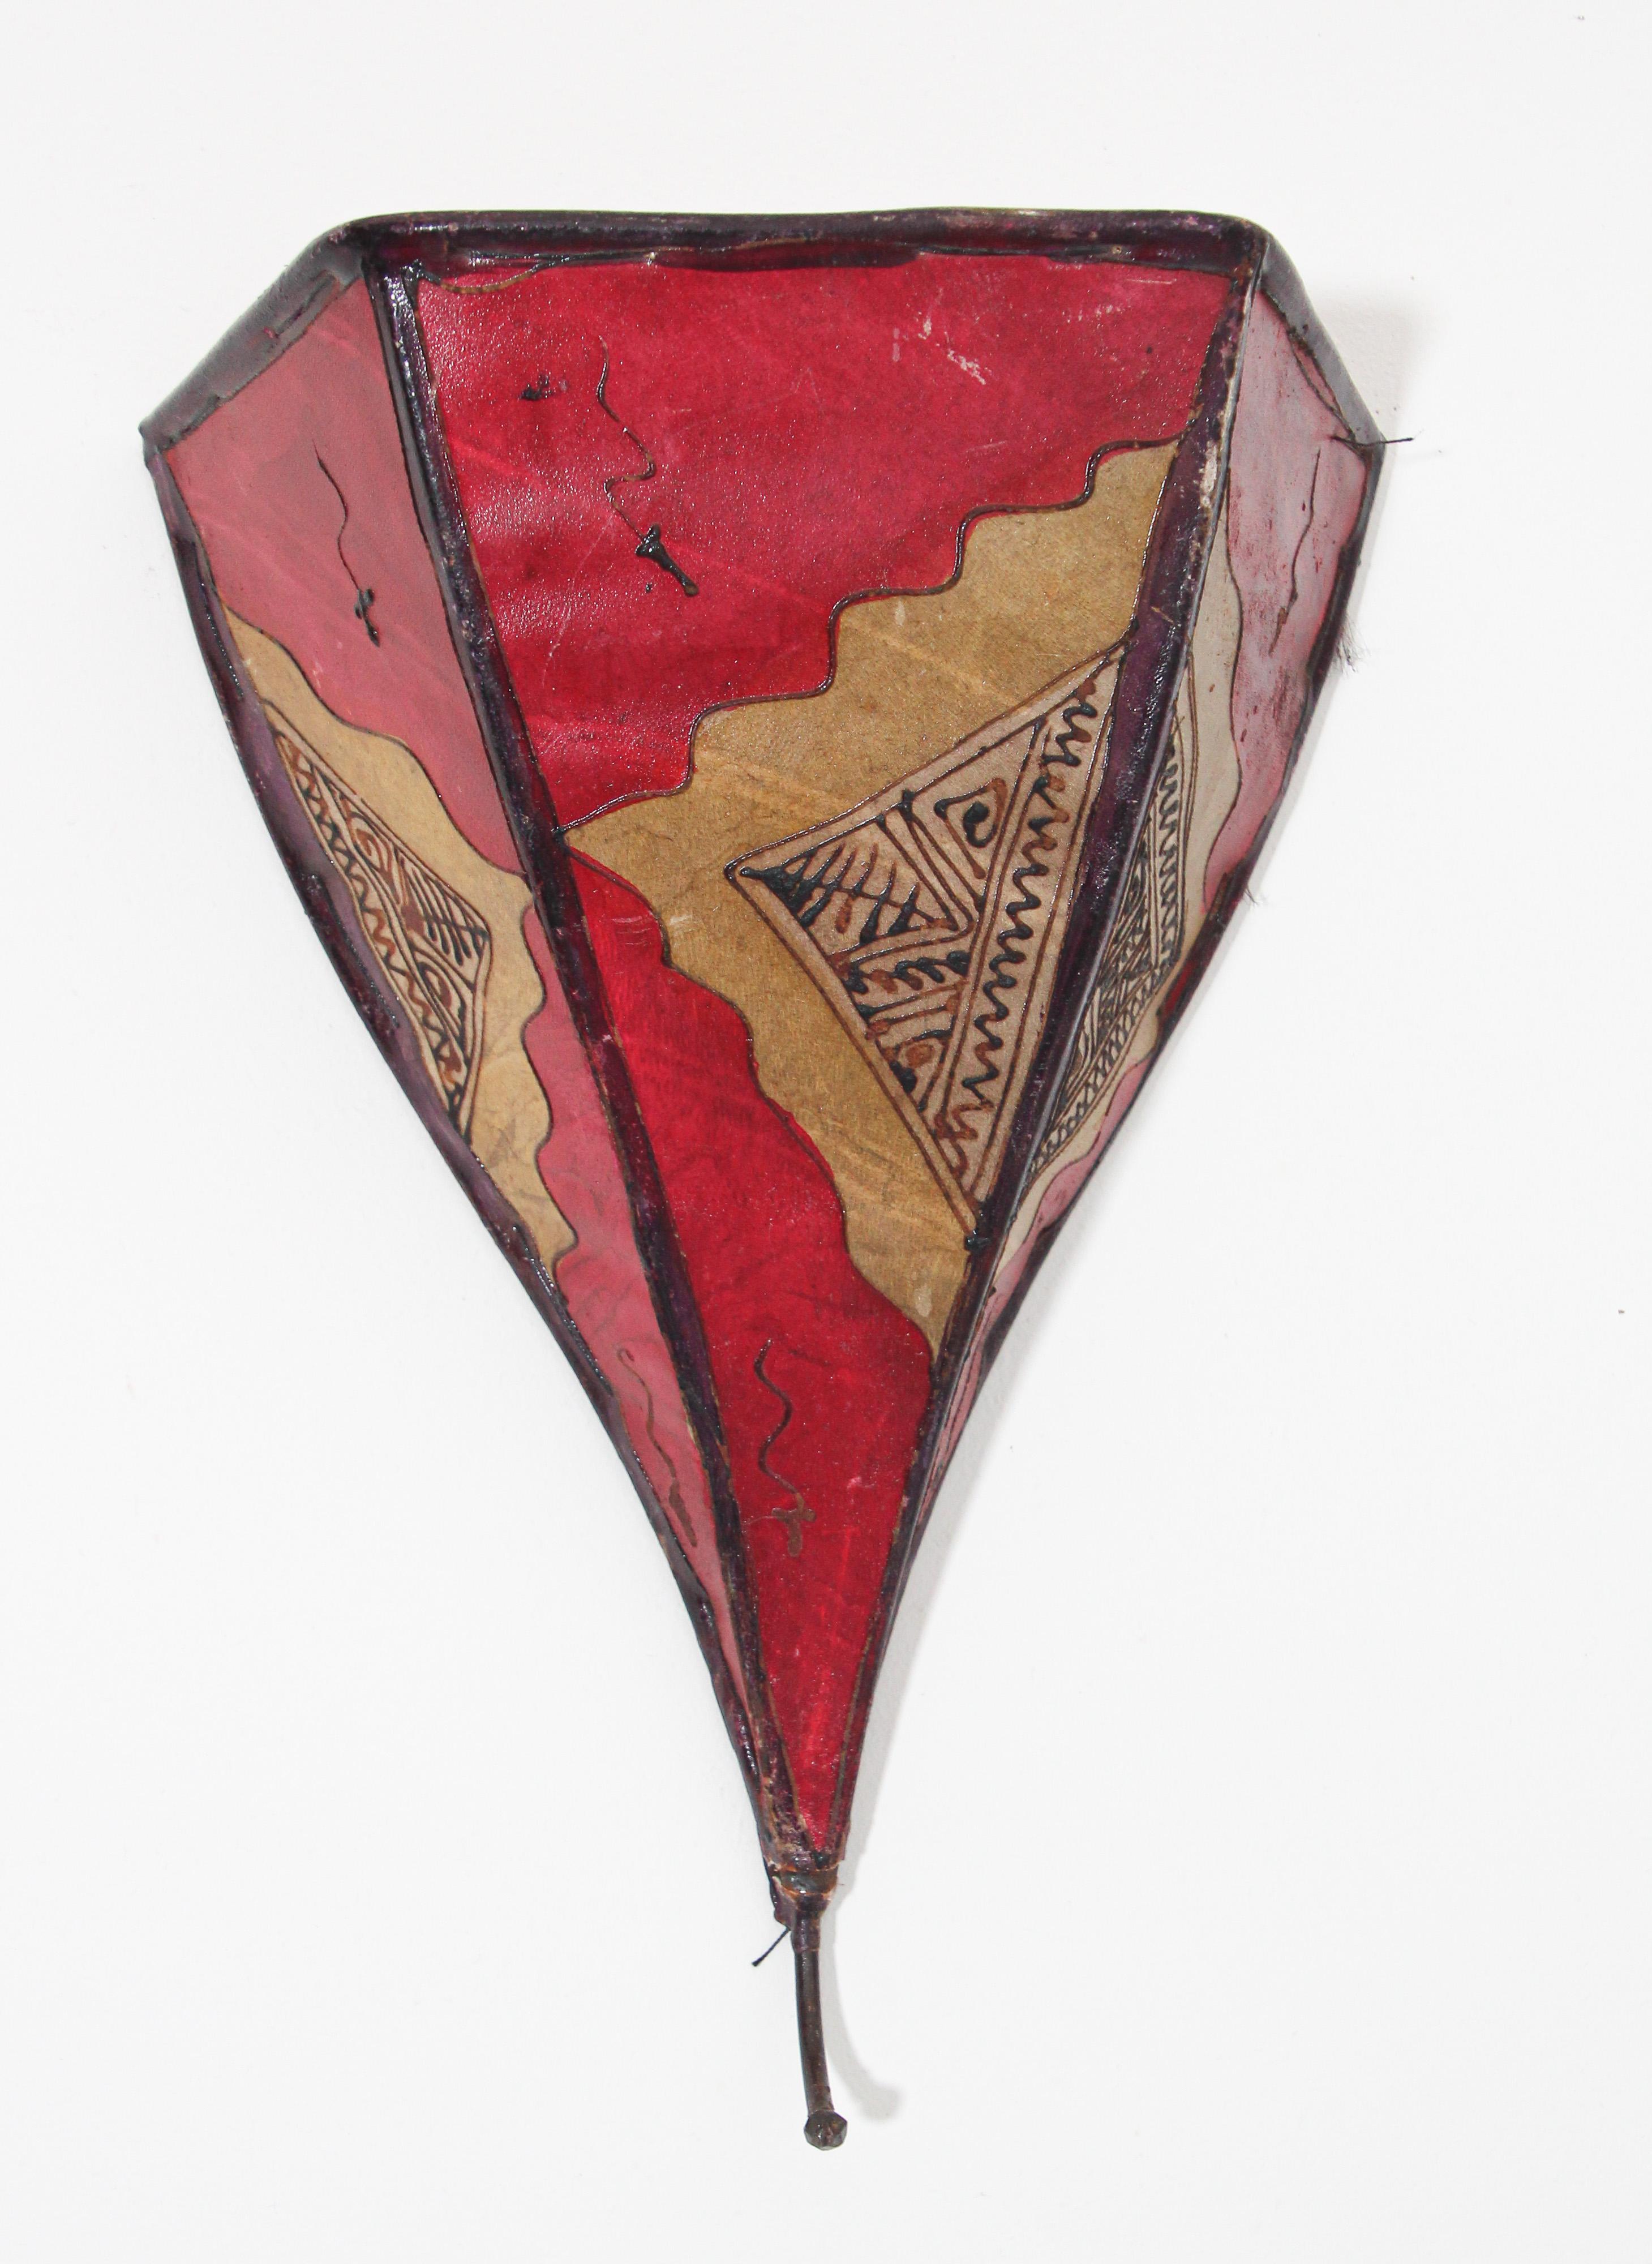 Afrikanische Stammeskunst Pergament Wandleuchte mit einer großen Dreiecksform aus Leder auf Eisen genäht und handbemalt Oberfläche.
Diese marokkanischen Kunstwerke können als Lampenschirm für die Wand verwendet werden.
Der mit Pergament überzogene